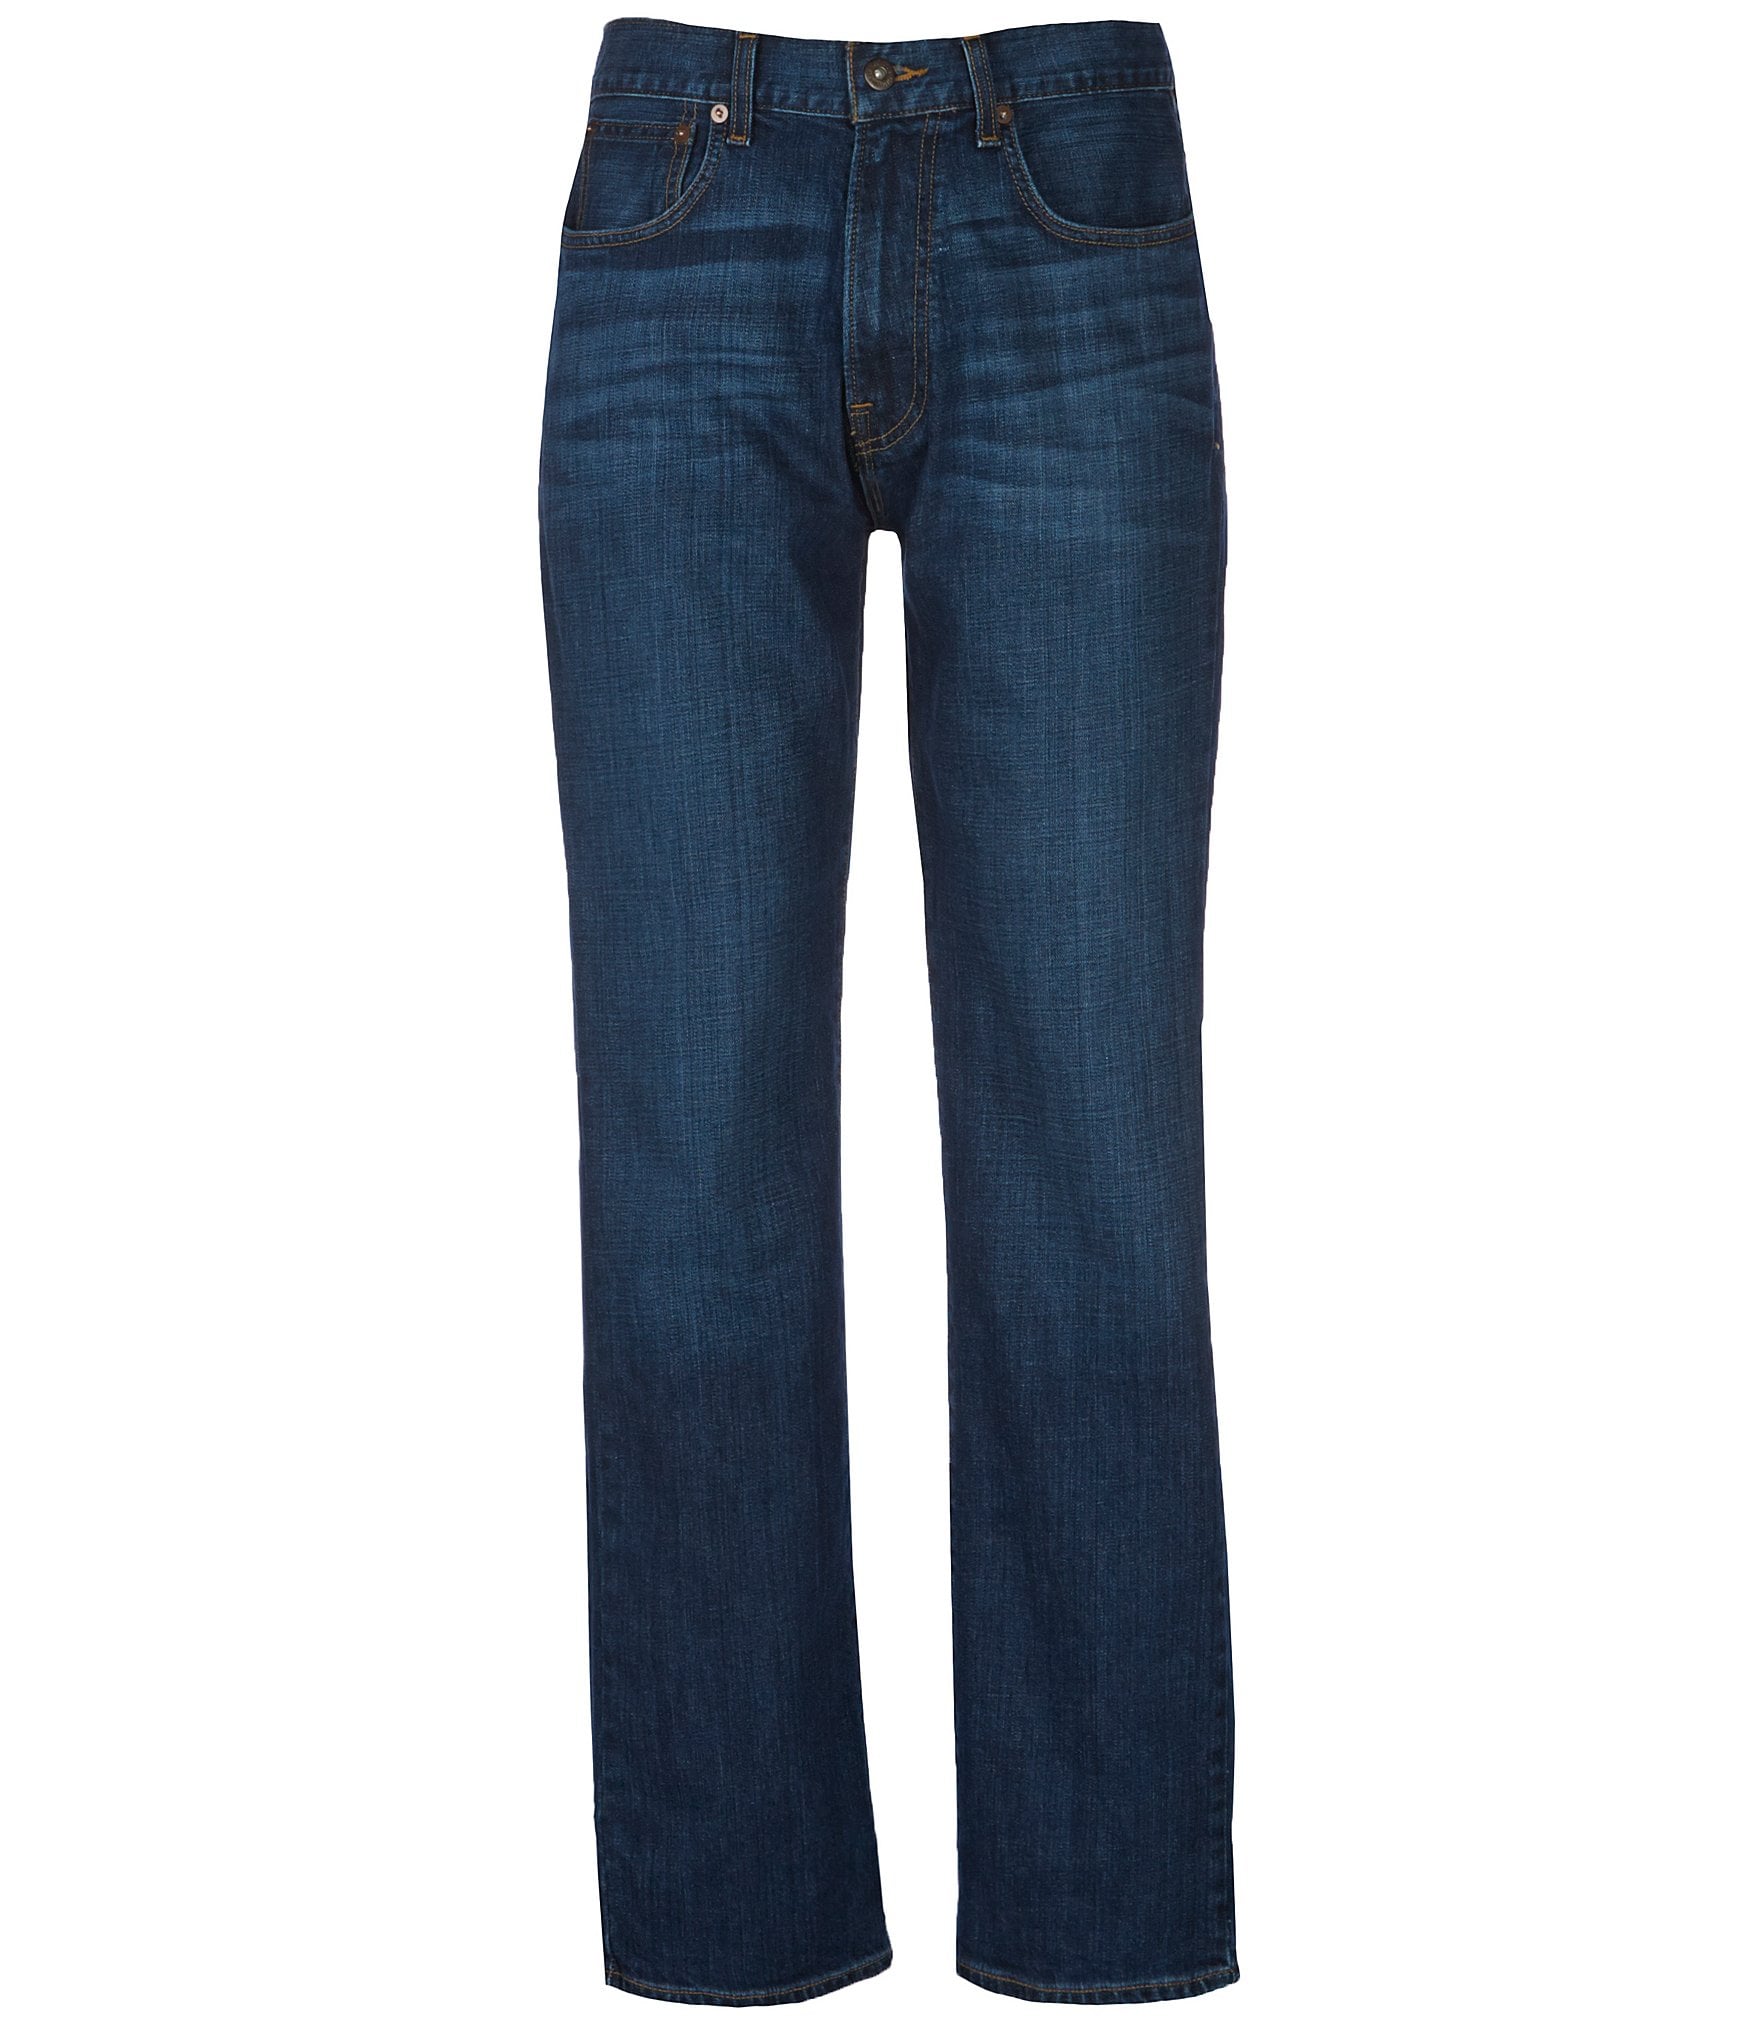 Cremieux Jeans Big & Tall Straight-Fit Stretch Jeans | Dillard's